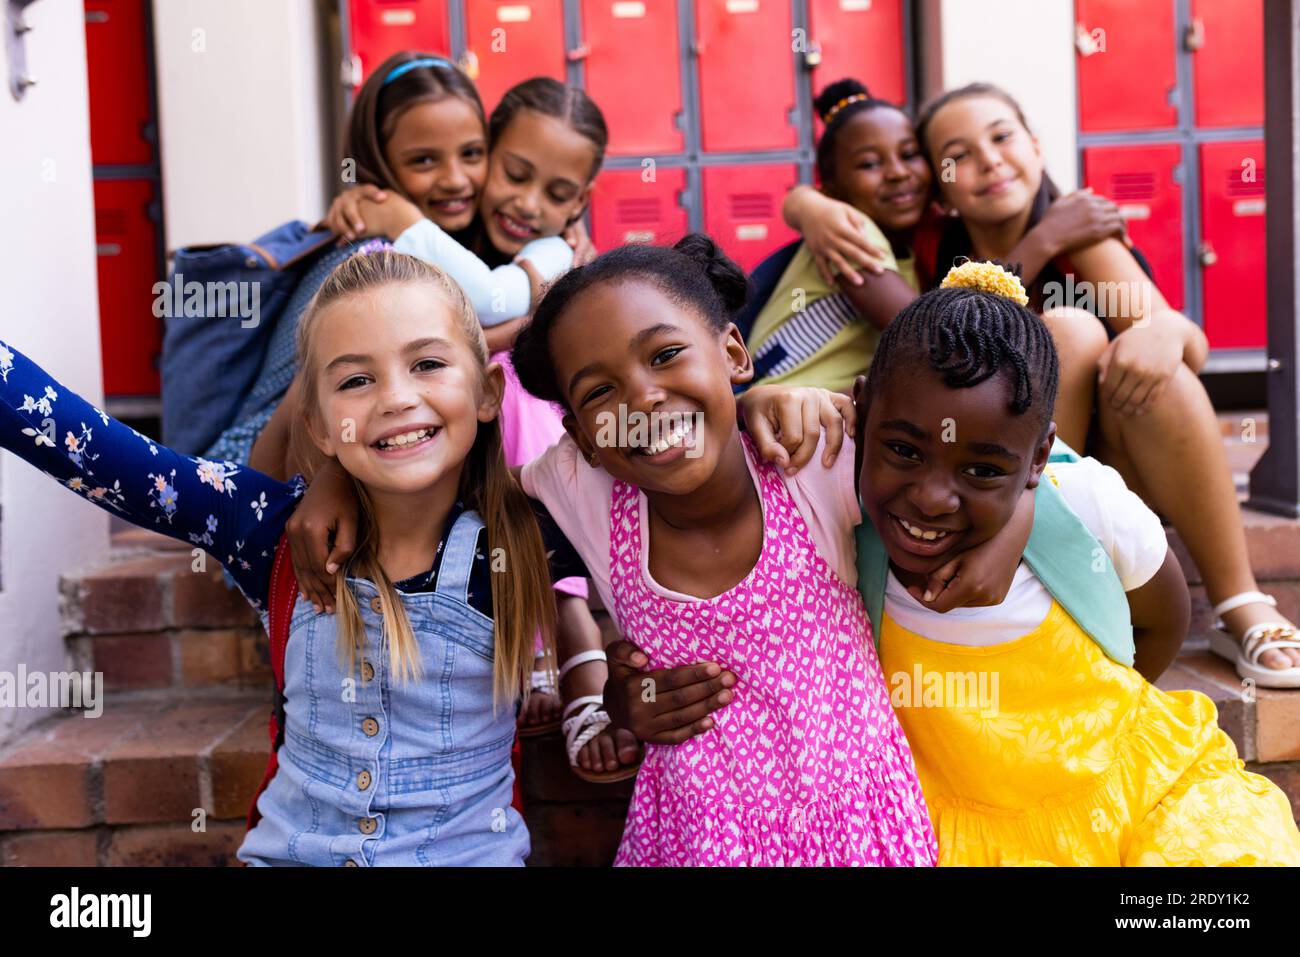 Portrait of diverse happy schoolgirls embracing in elementary school cloakroom Stock Photo